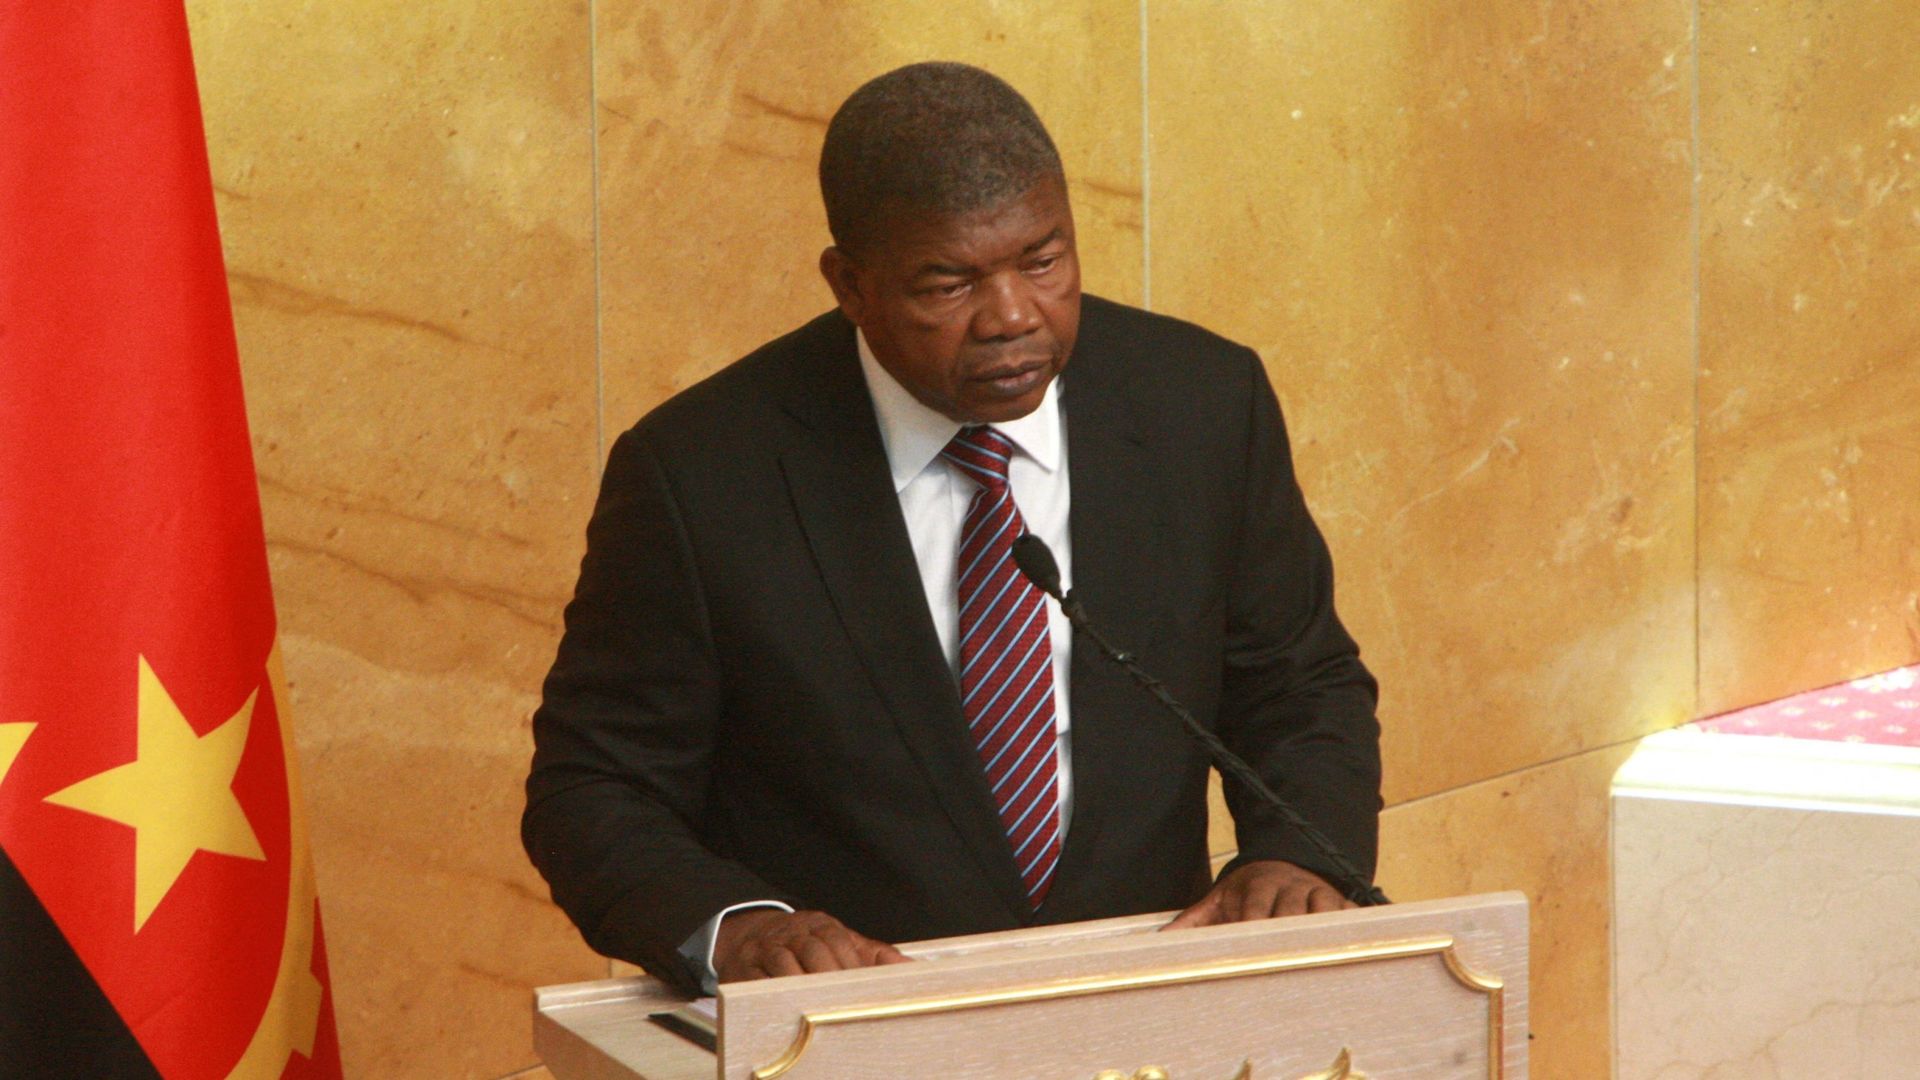 Le président angolais Joao Lourenco, prononce son premier discours à l'Assemblée de la nation angolaise à Luanda le 16 octobre 2017. AMPE ROGERIO / AFP